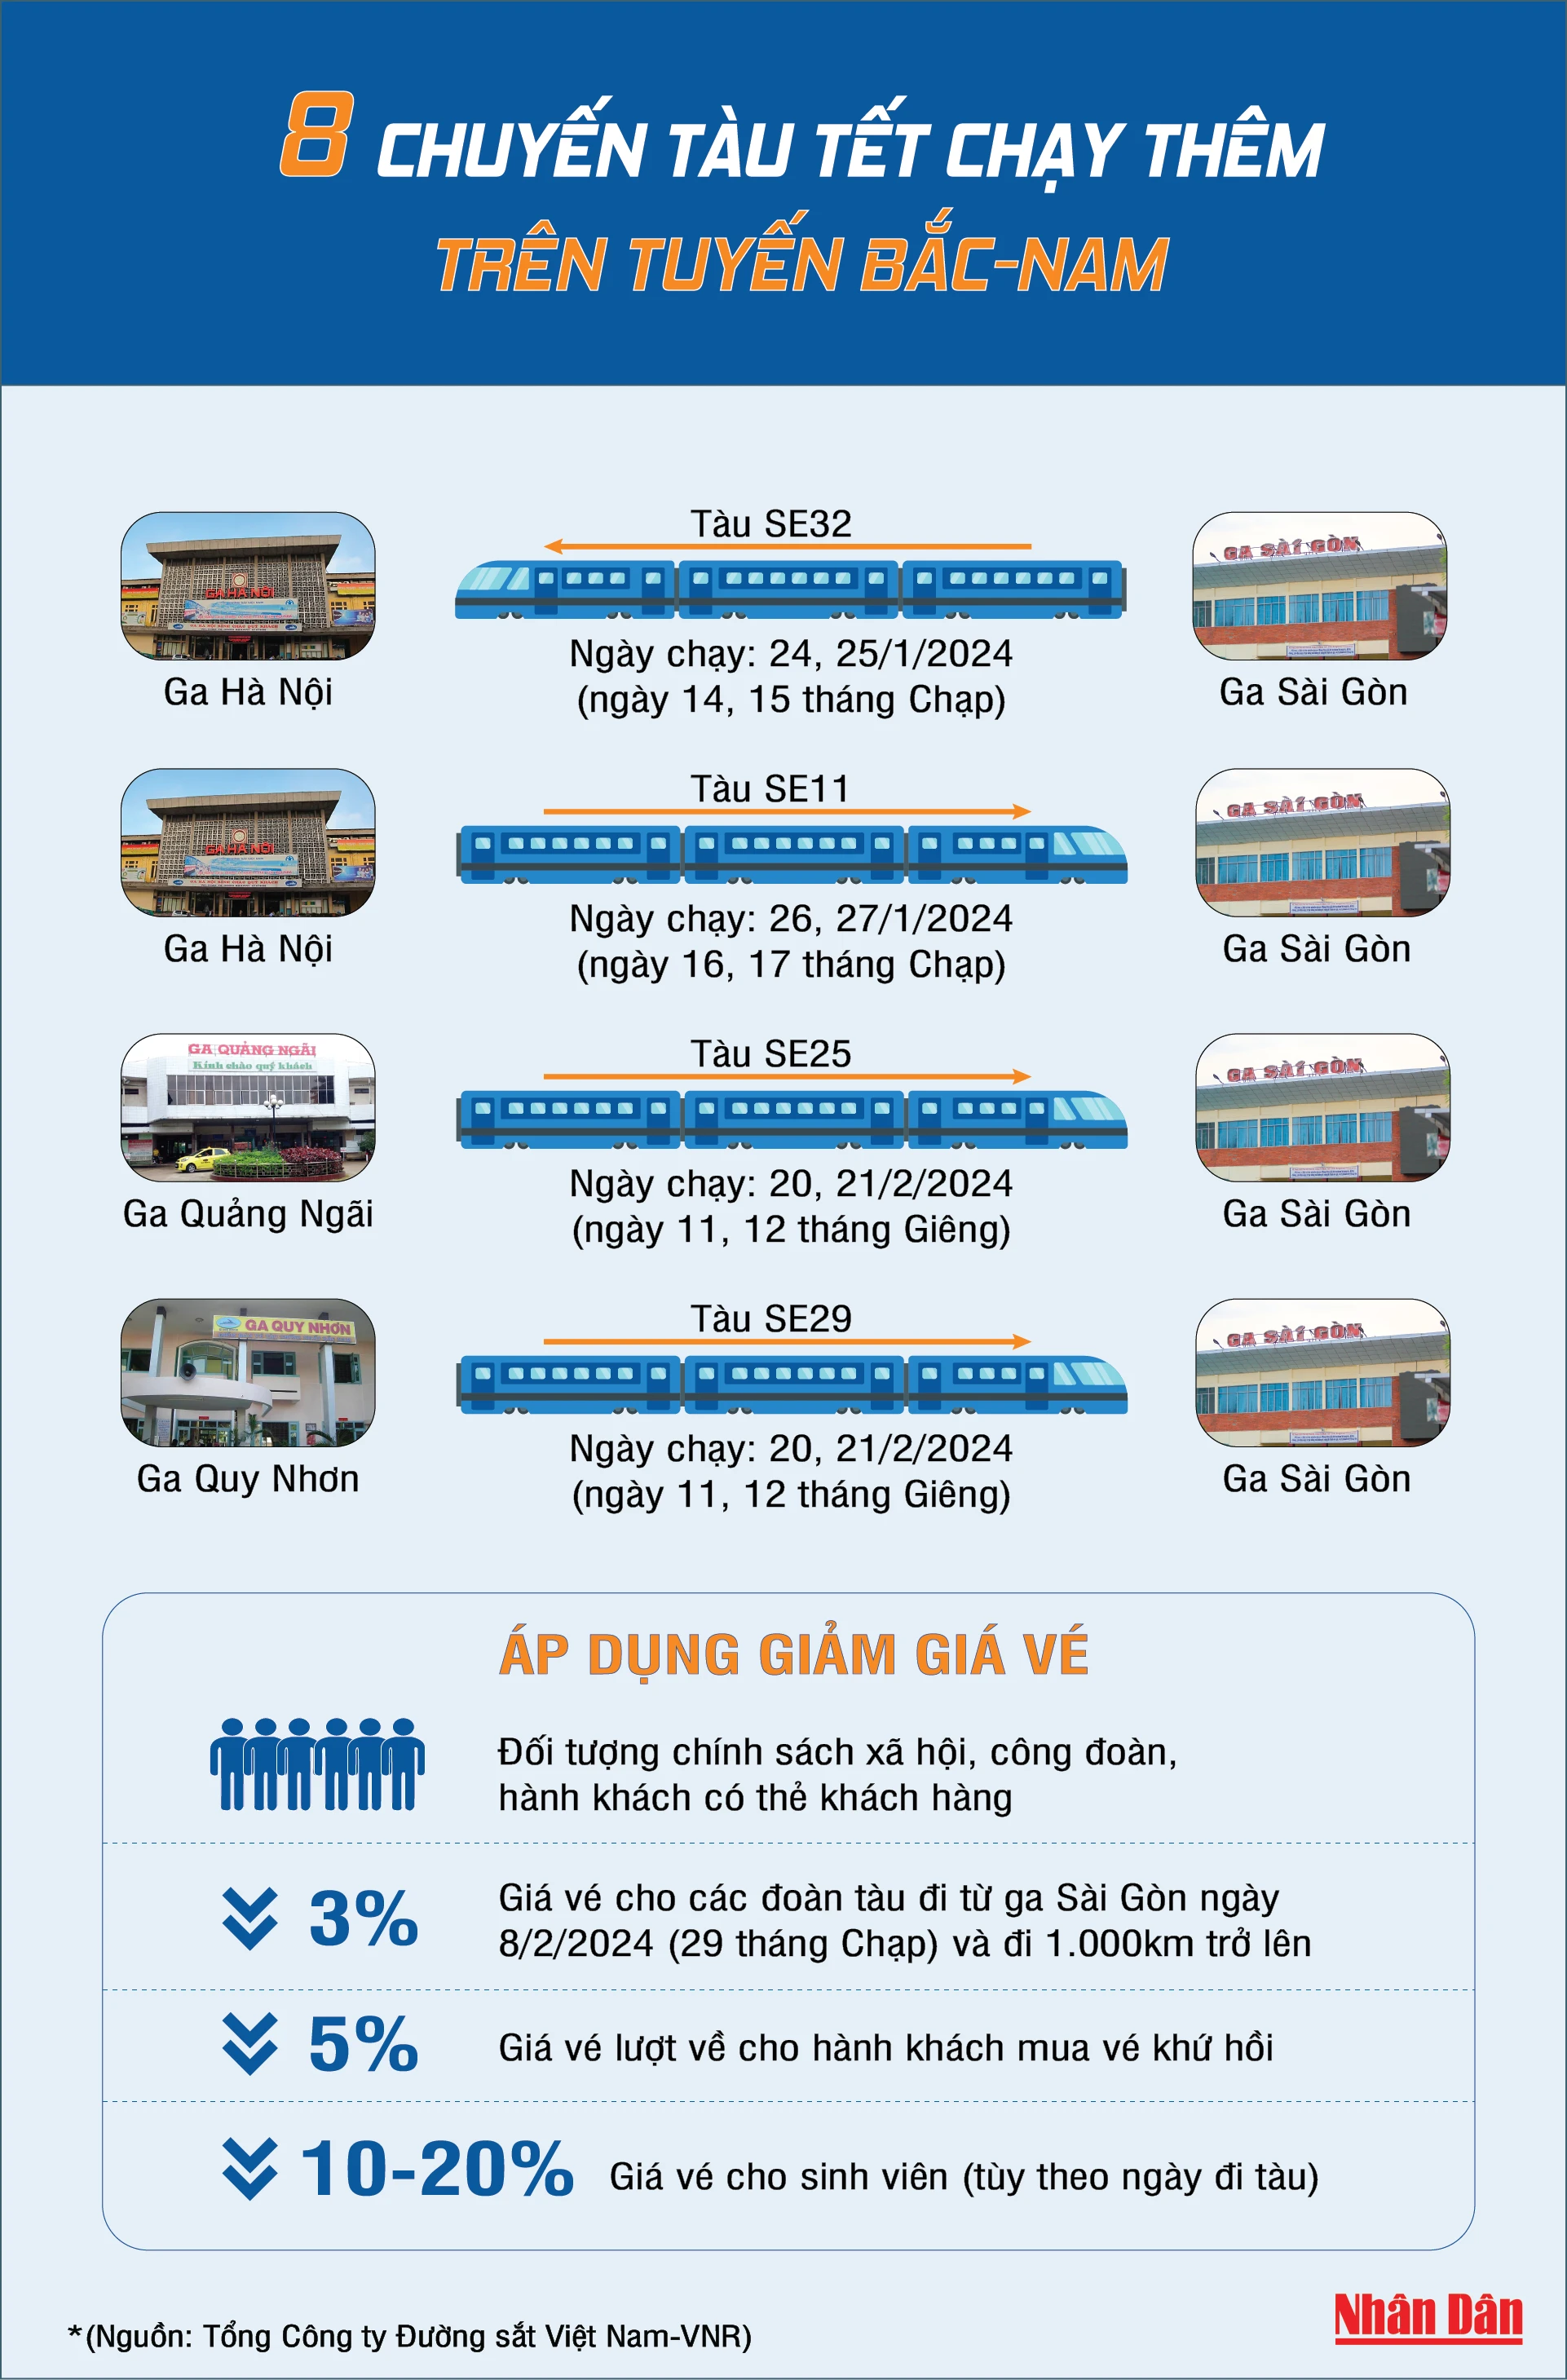 [Infographic] 8 chuyến tàu Tết chạy thêm trên tuyến bắc-nam ảnh 1